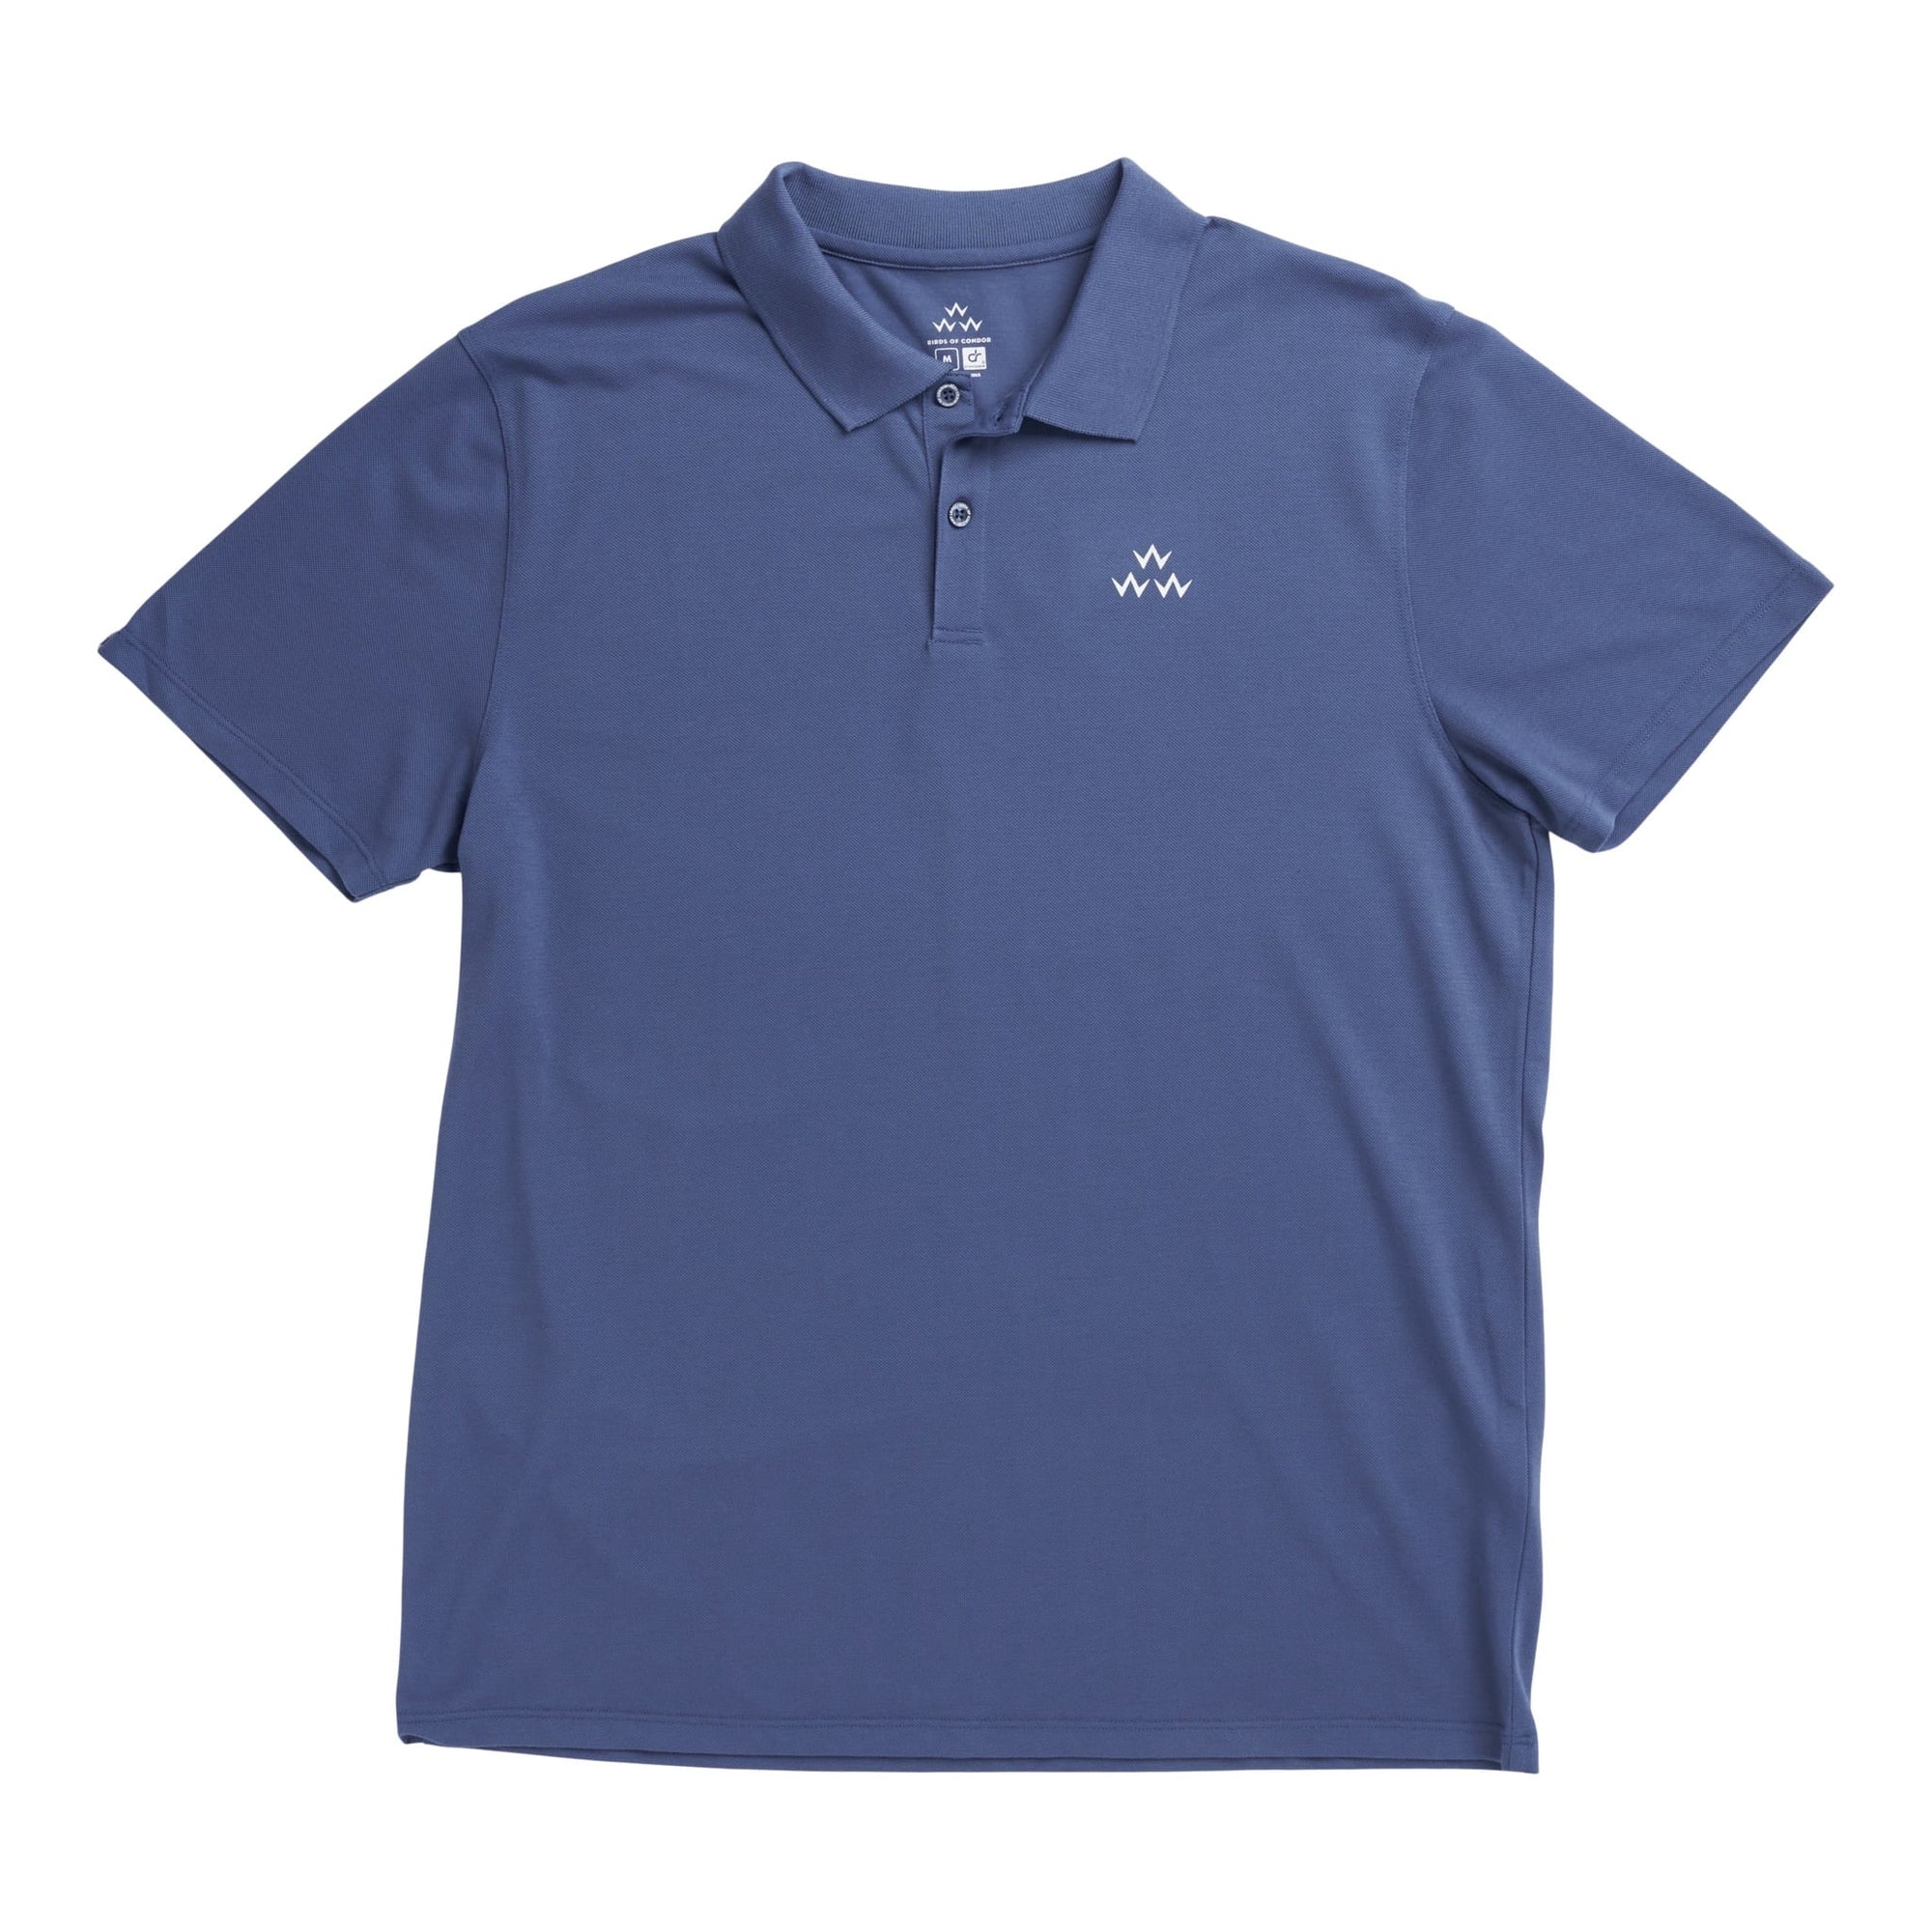 birds of condor navy blue golf polo shirt front